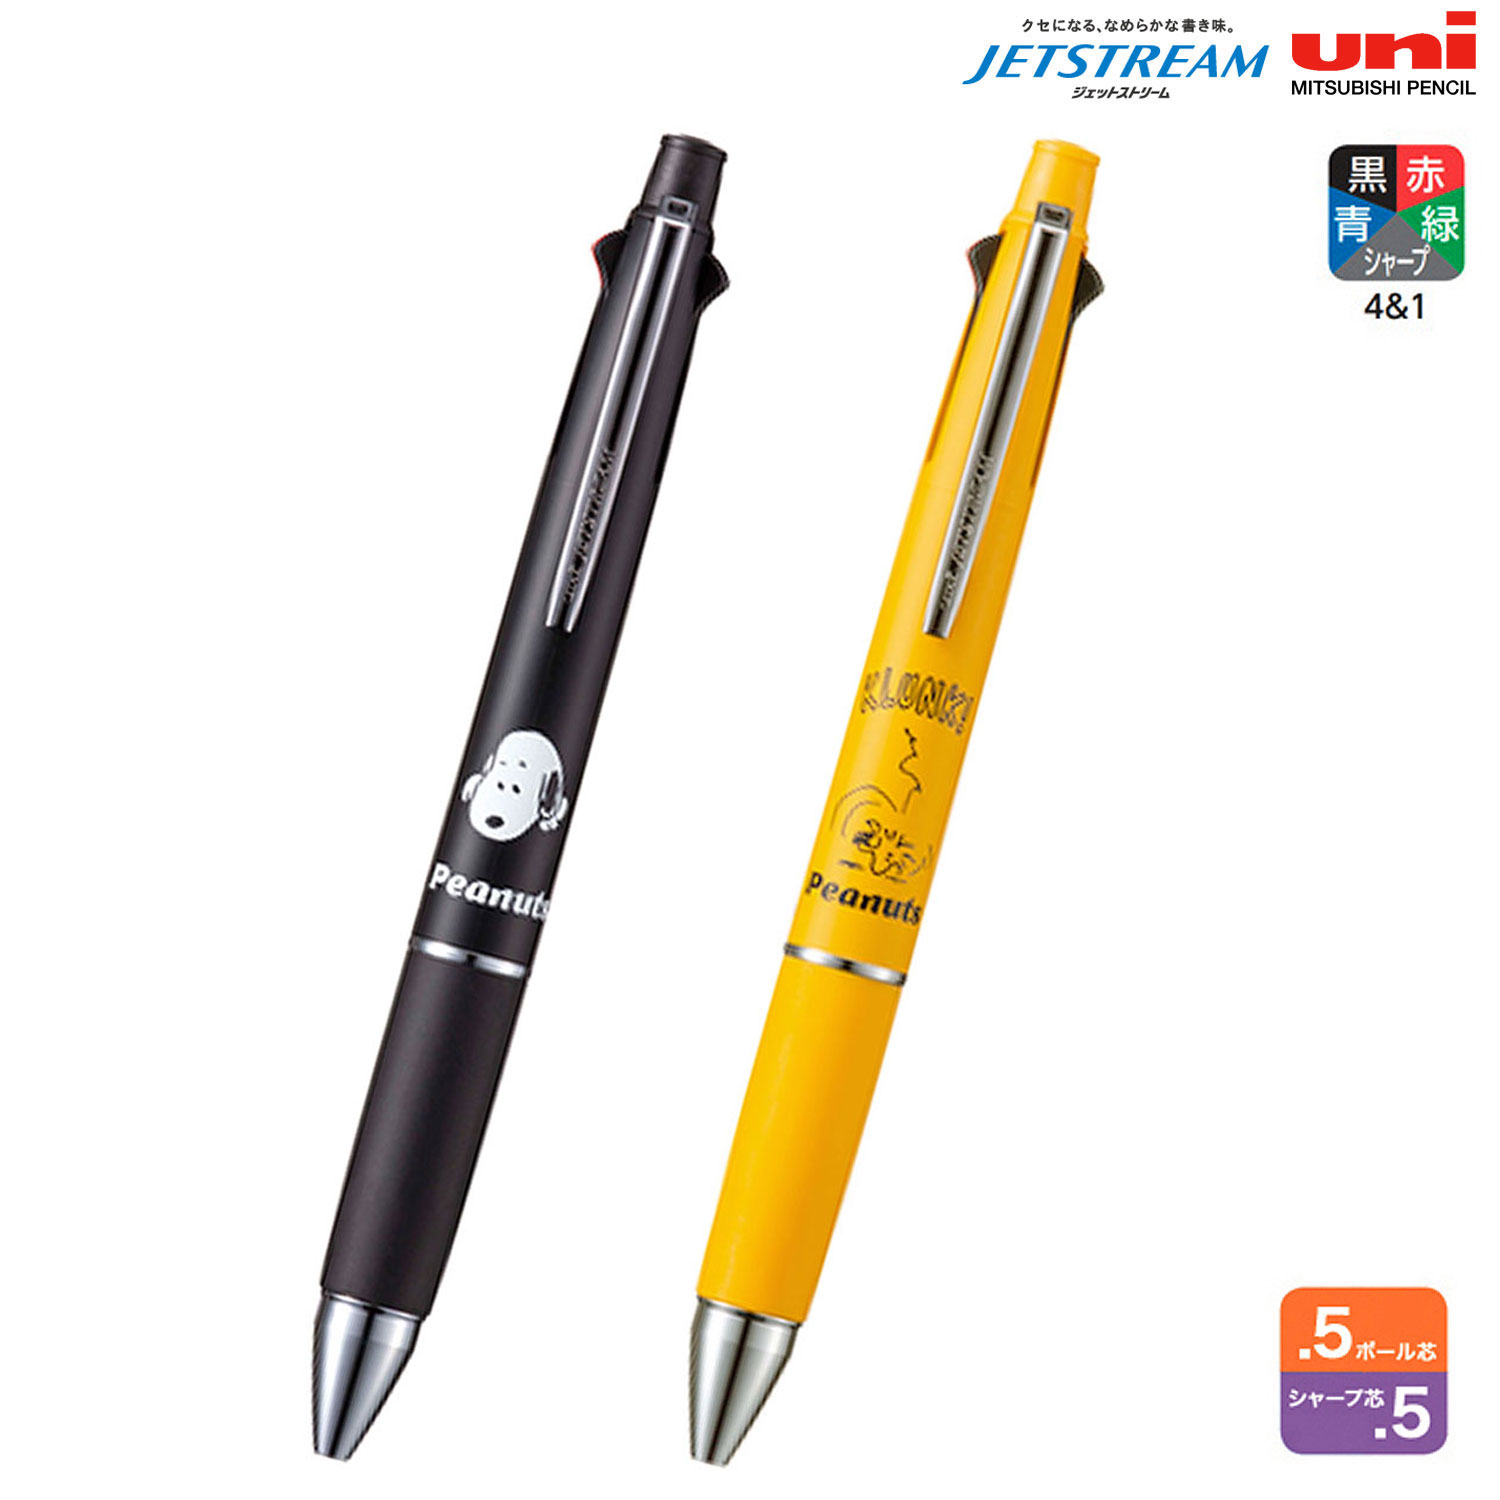 三菱鉛筆 uni ジェットストリーム 多機能ペン 4＆1 0.5 ピーナッツ スヌーピー MSXE5-1600PN-05 全5色から選択 1